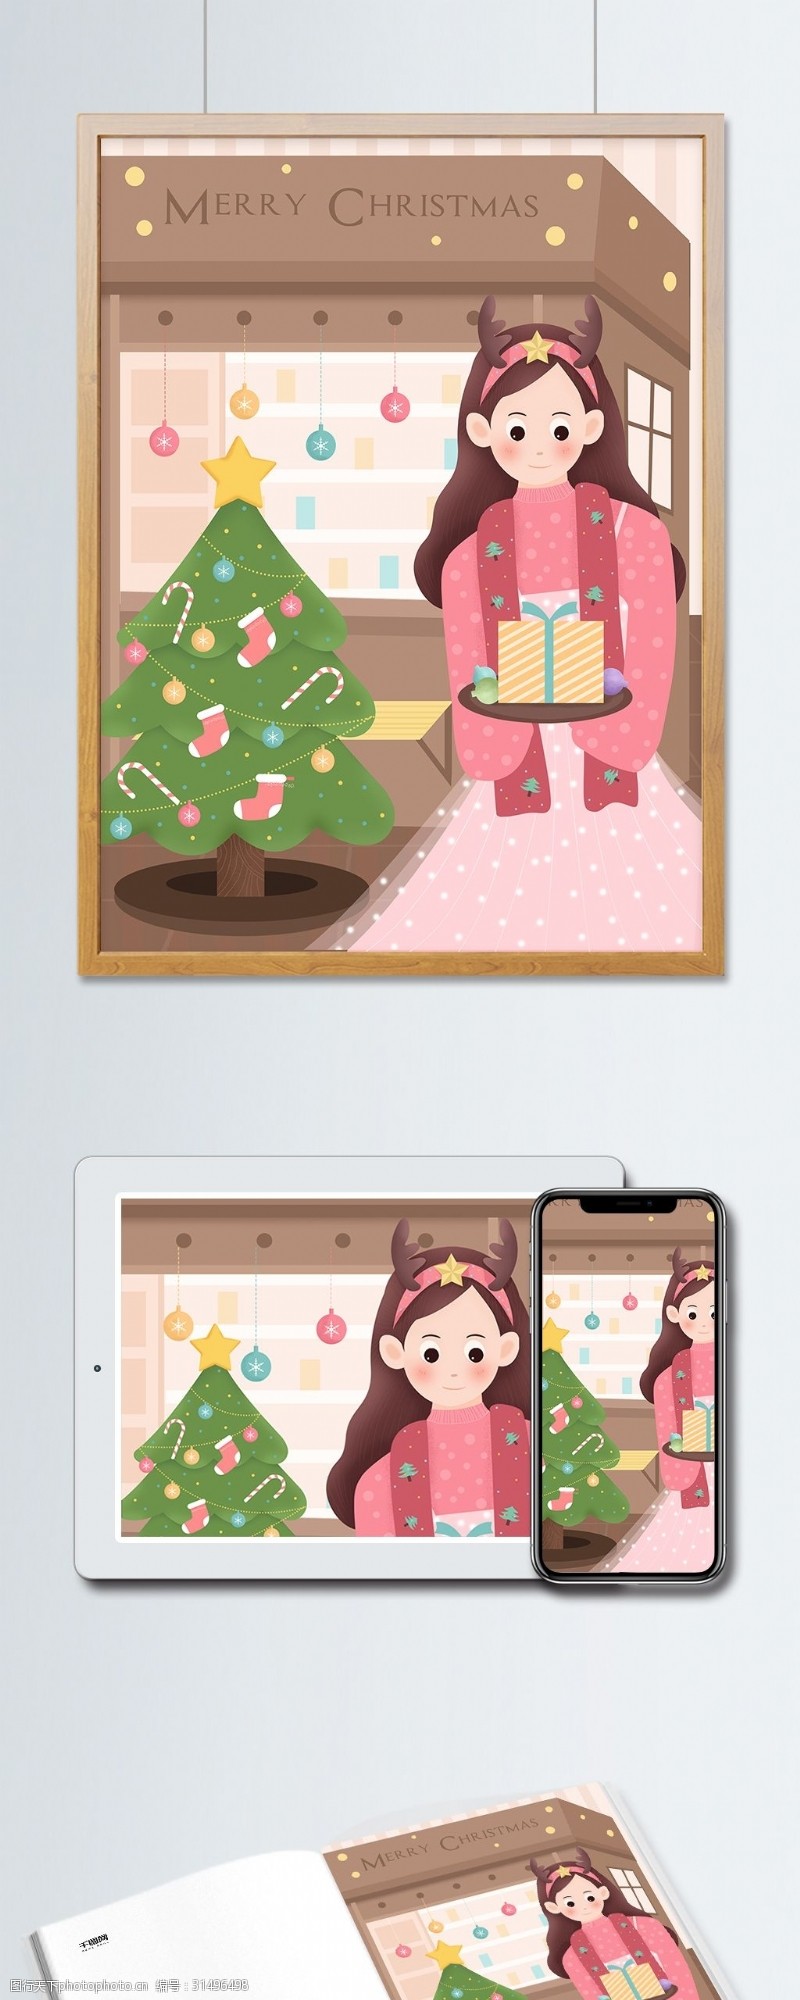 手机配图原创手绘小清新圣诞节女孩与圣诞树插画